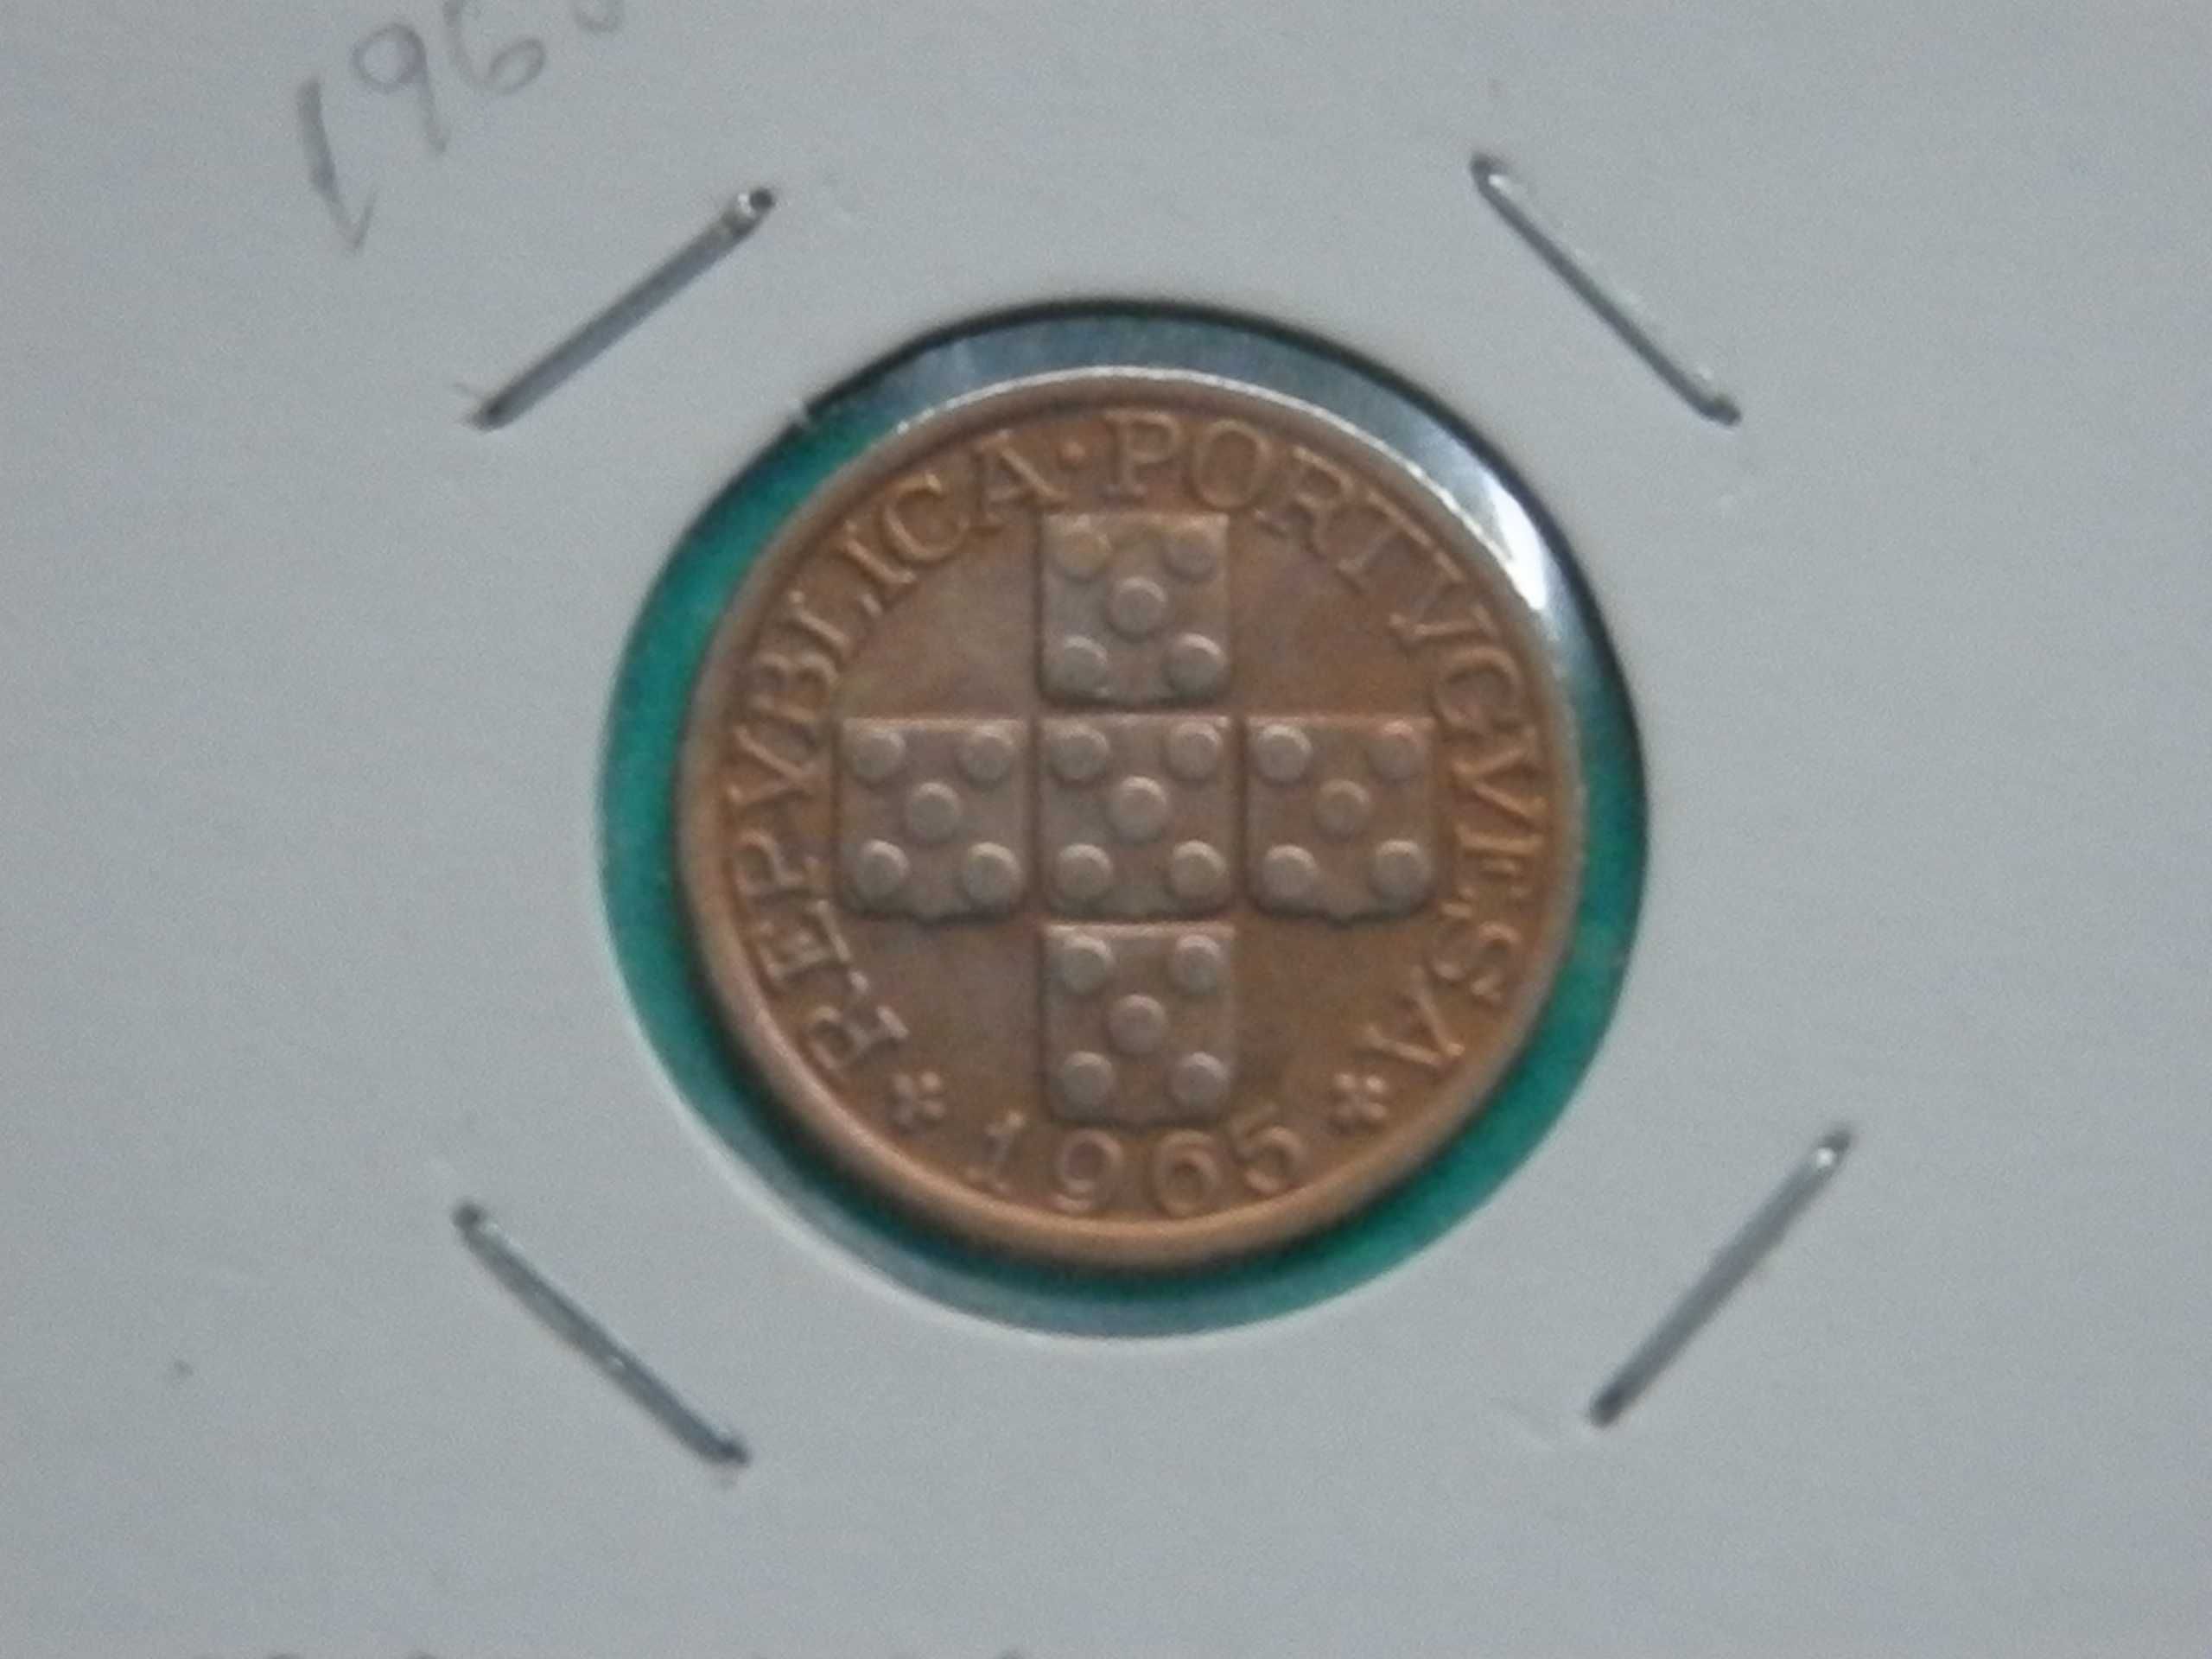 910 - República: X centavos 1965 bronze, por 0,40